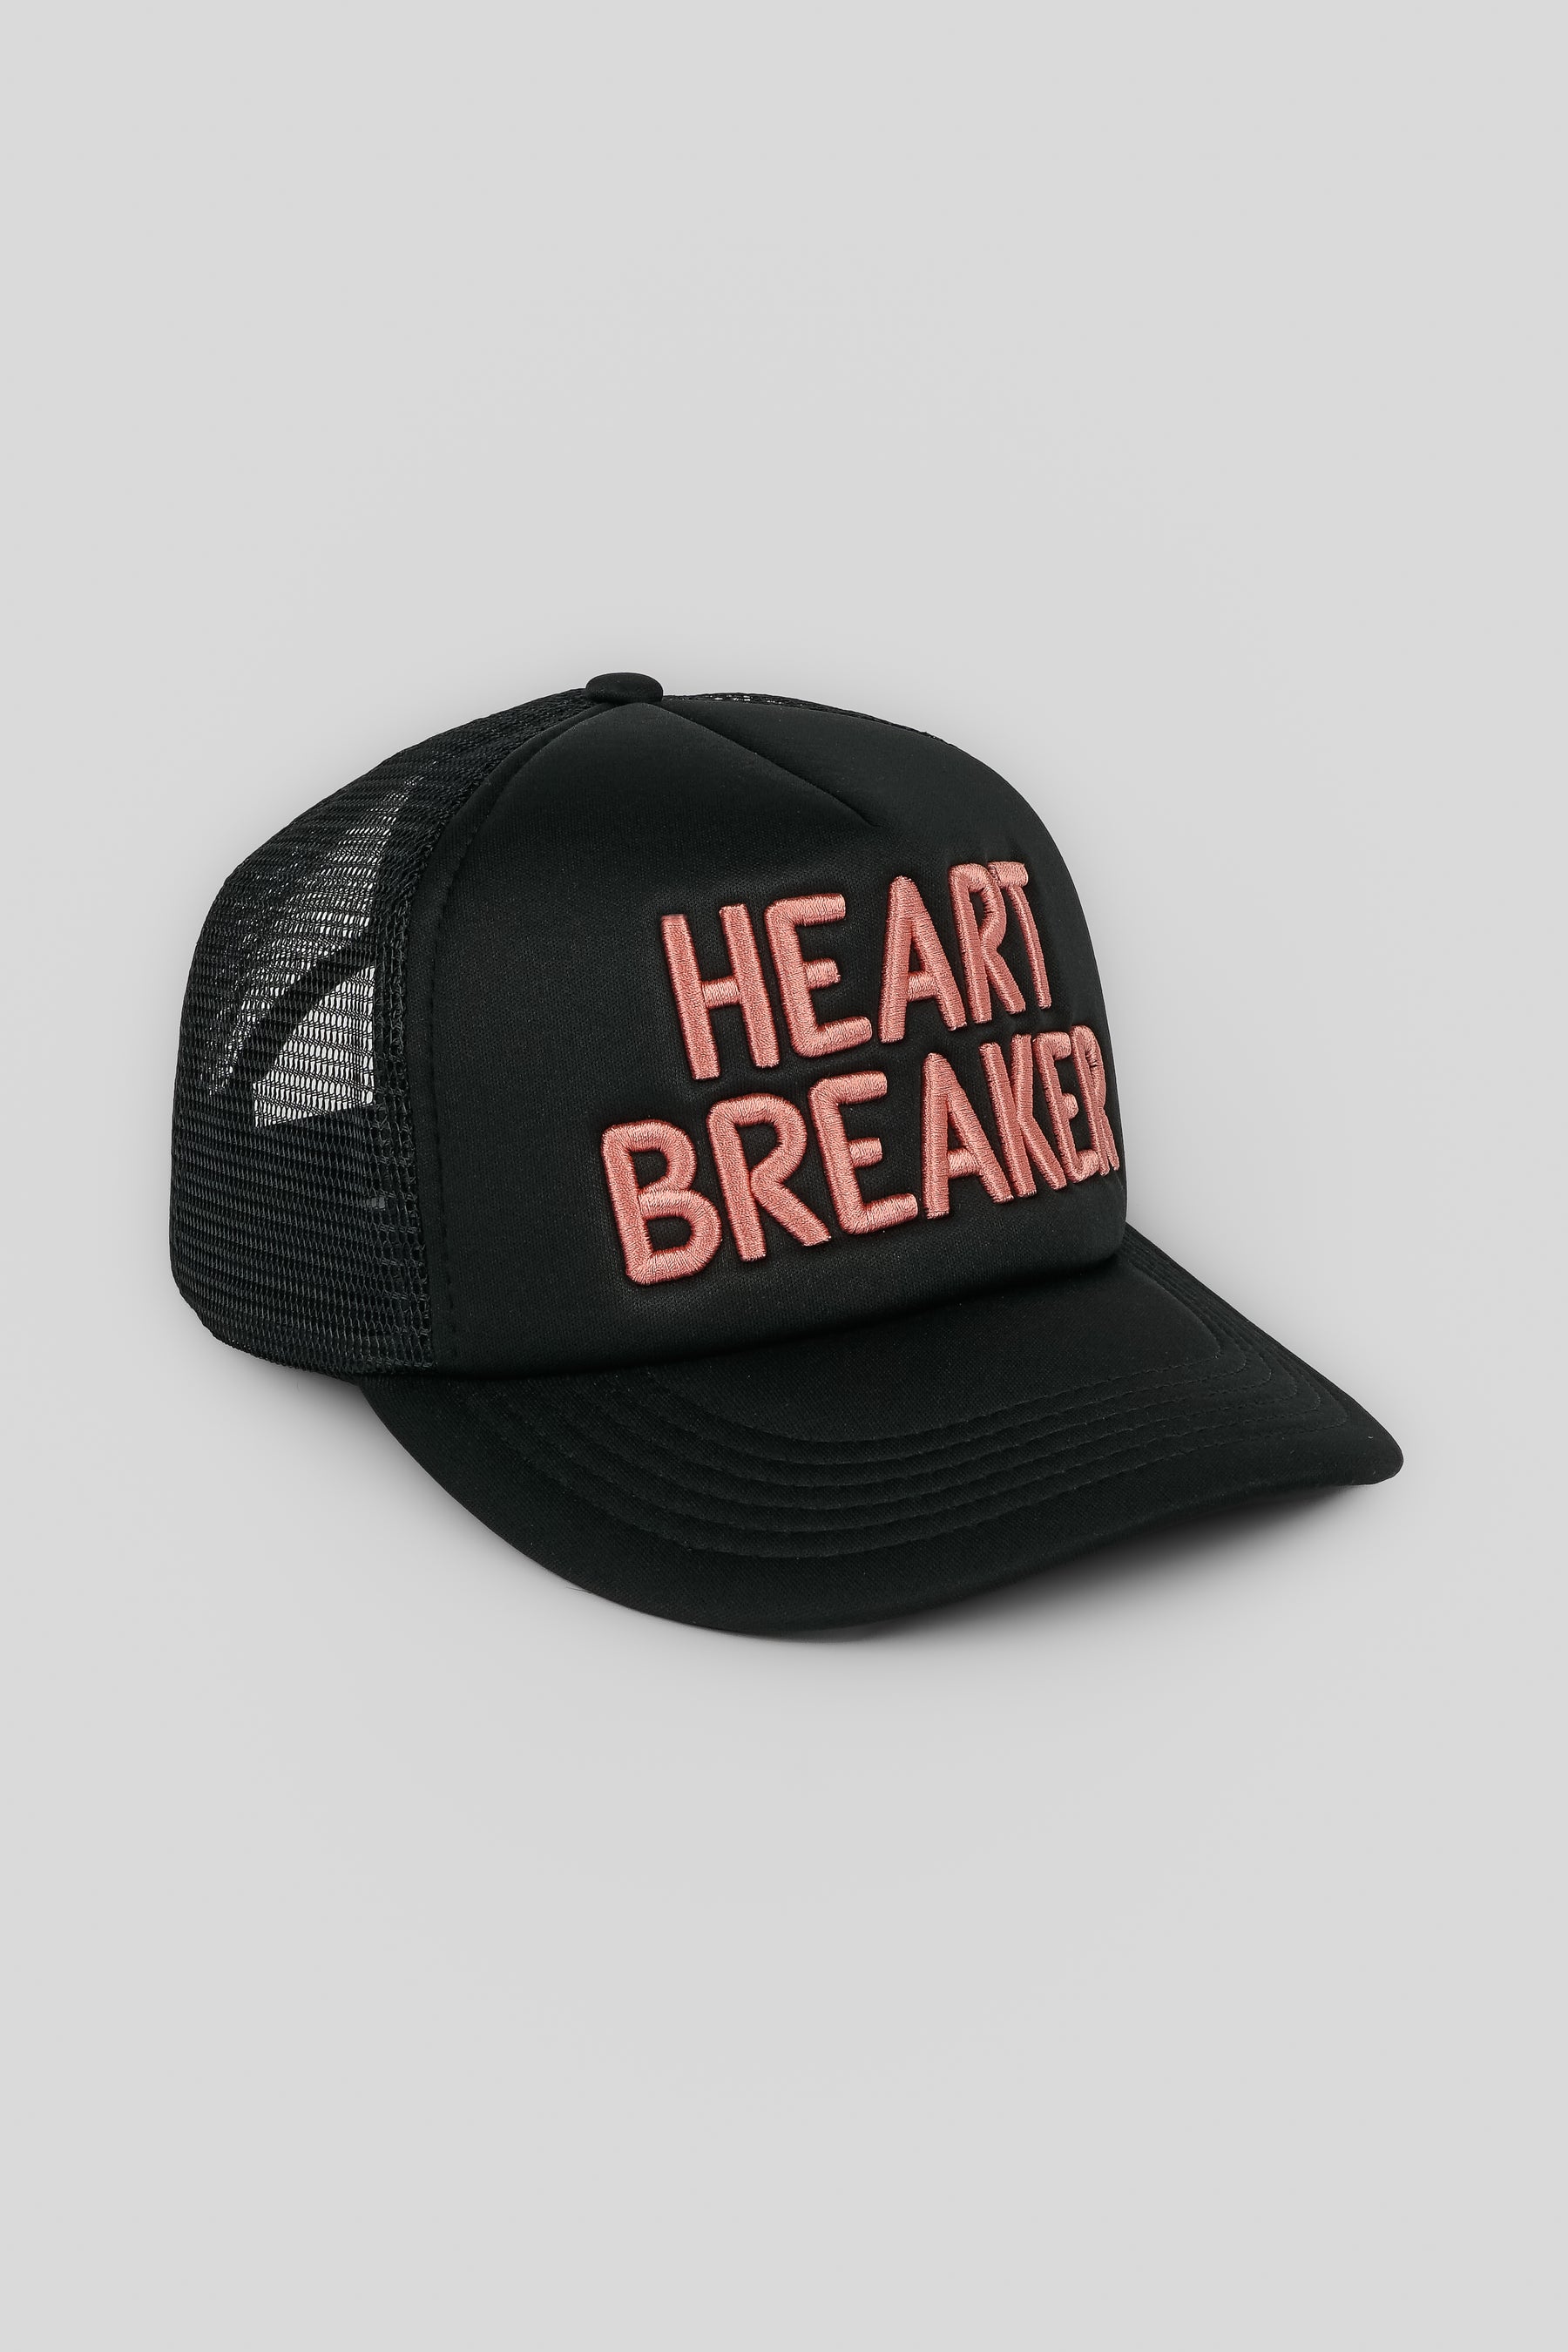 HEARTBREAKER TRUCKER HAT